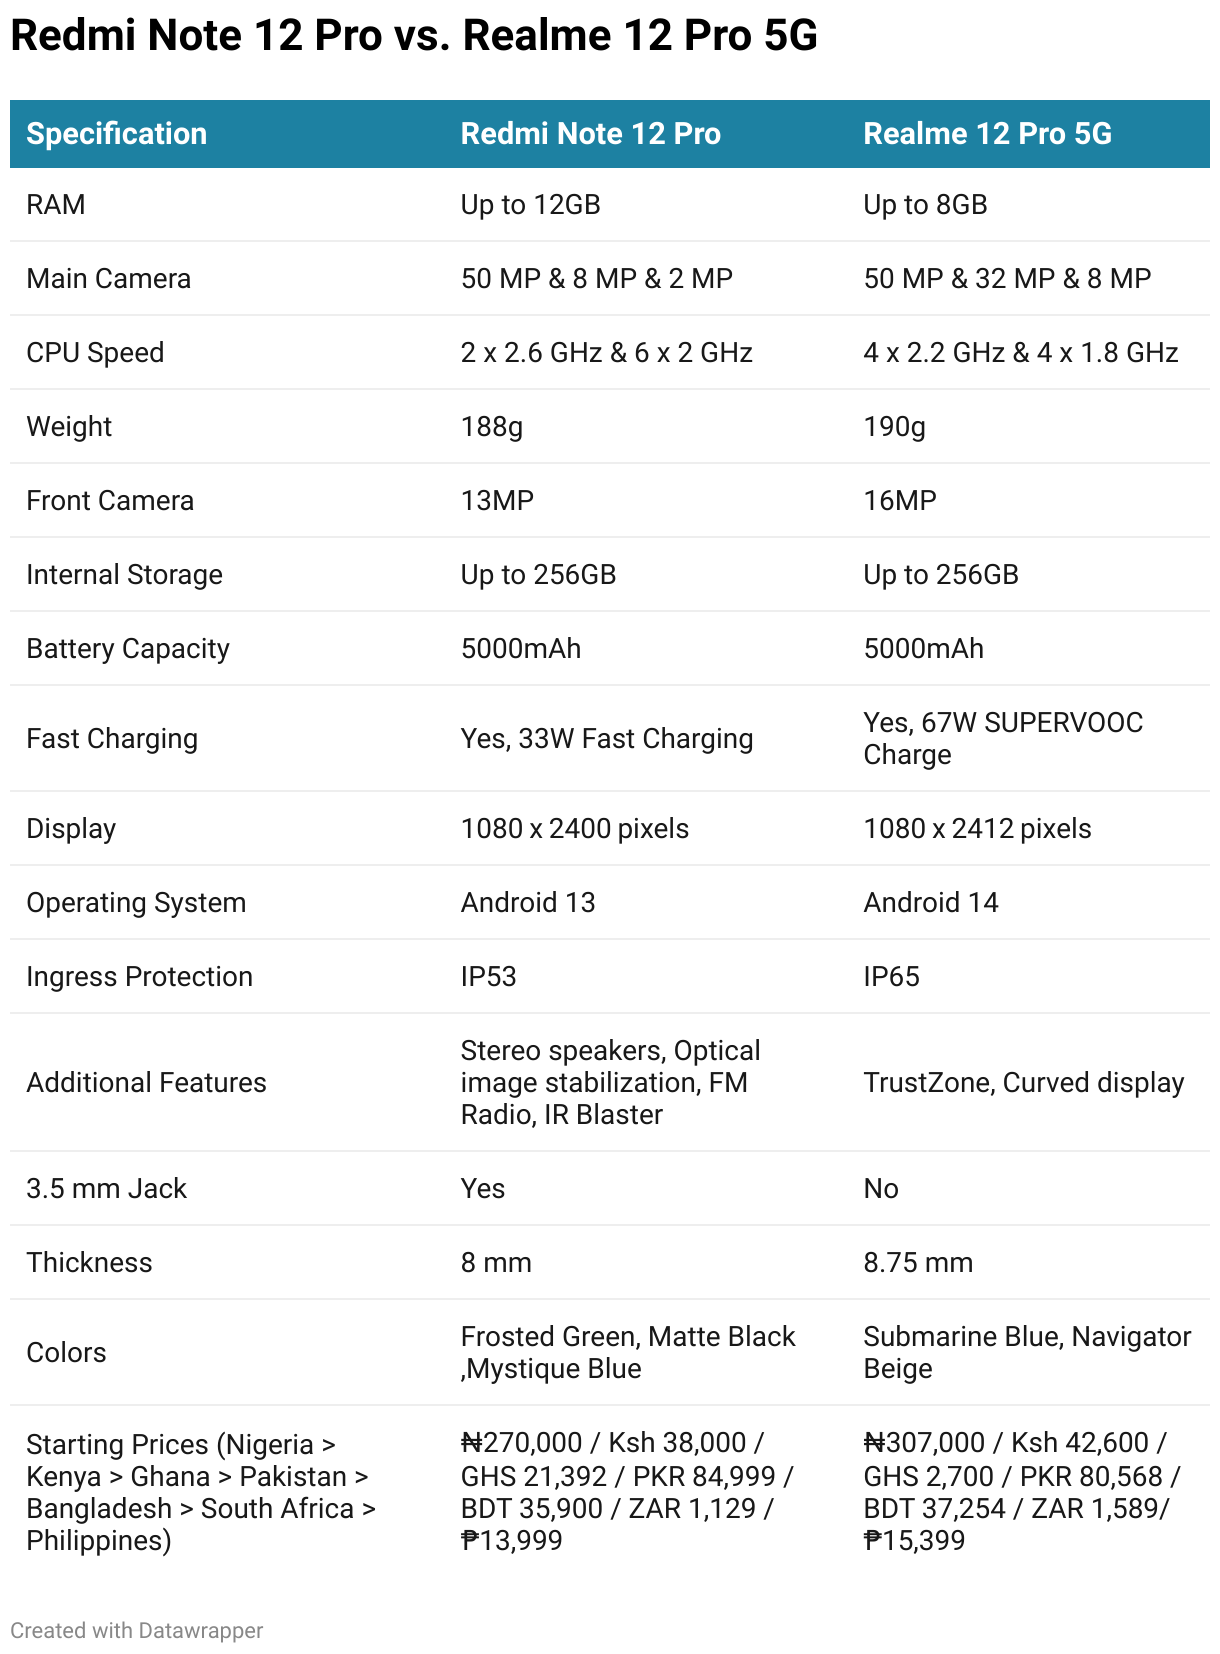 Specs Comparison Table of Redmi Note 12 Pro vs. Realme 12 Pro 5G